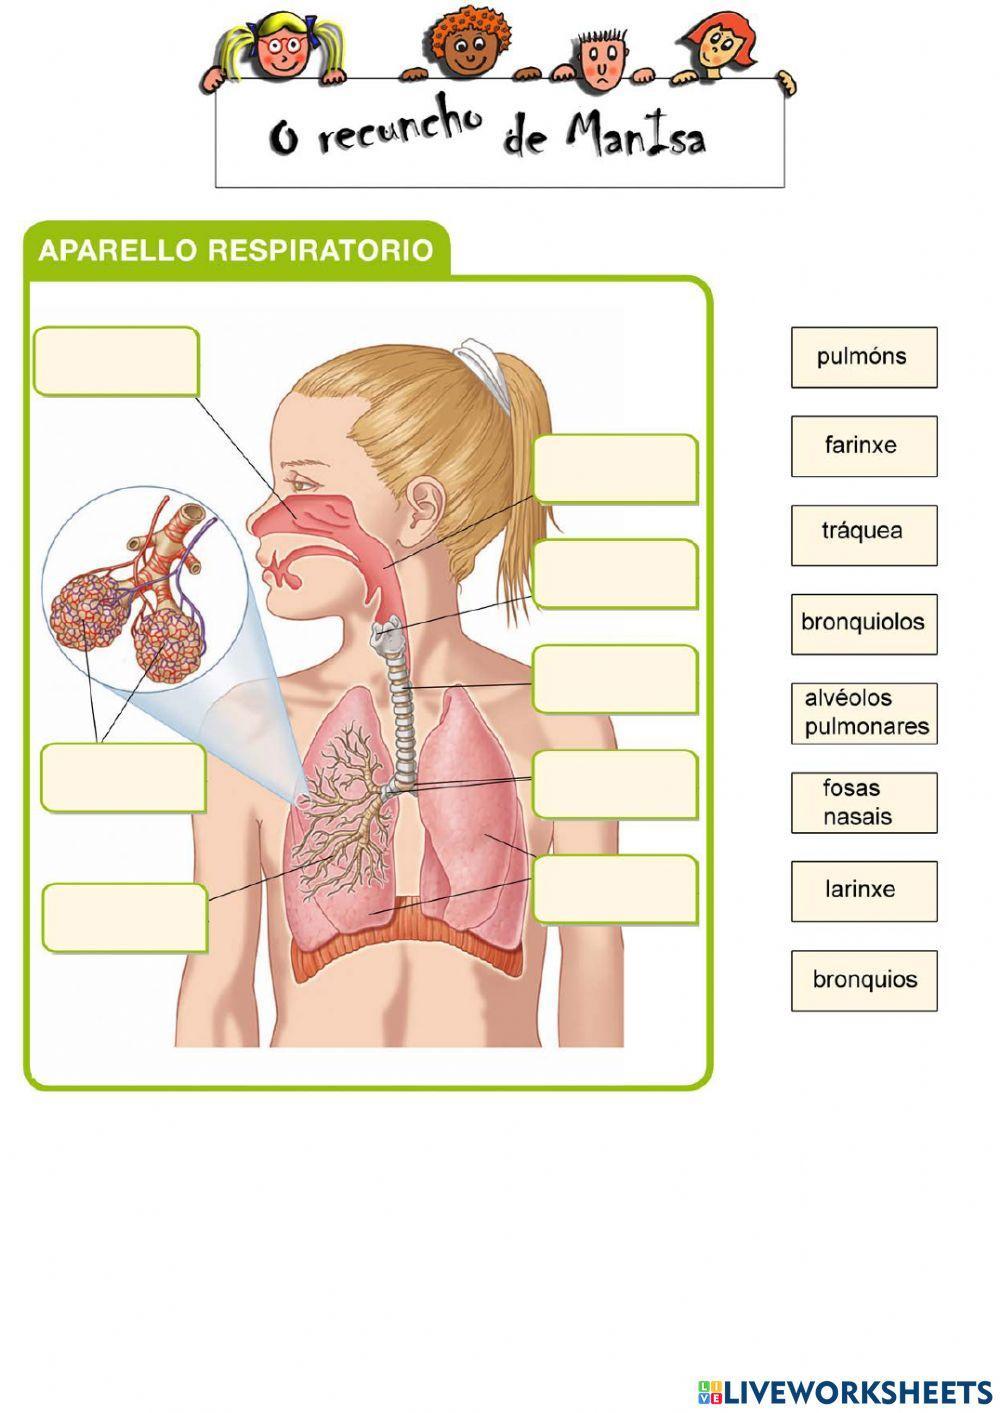 Aparello respiratorio 1